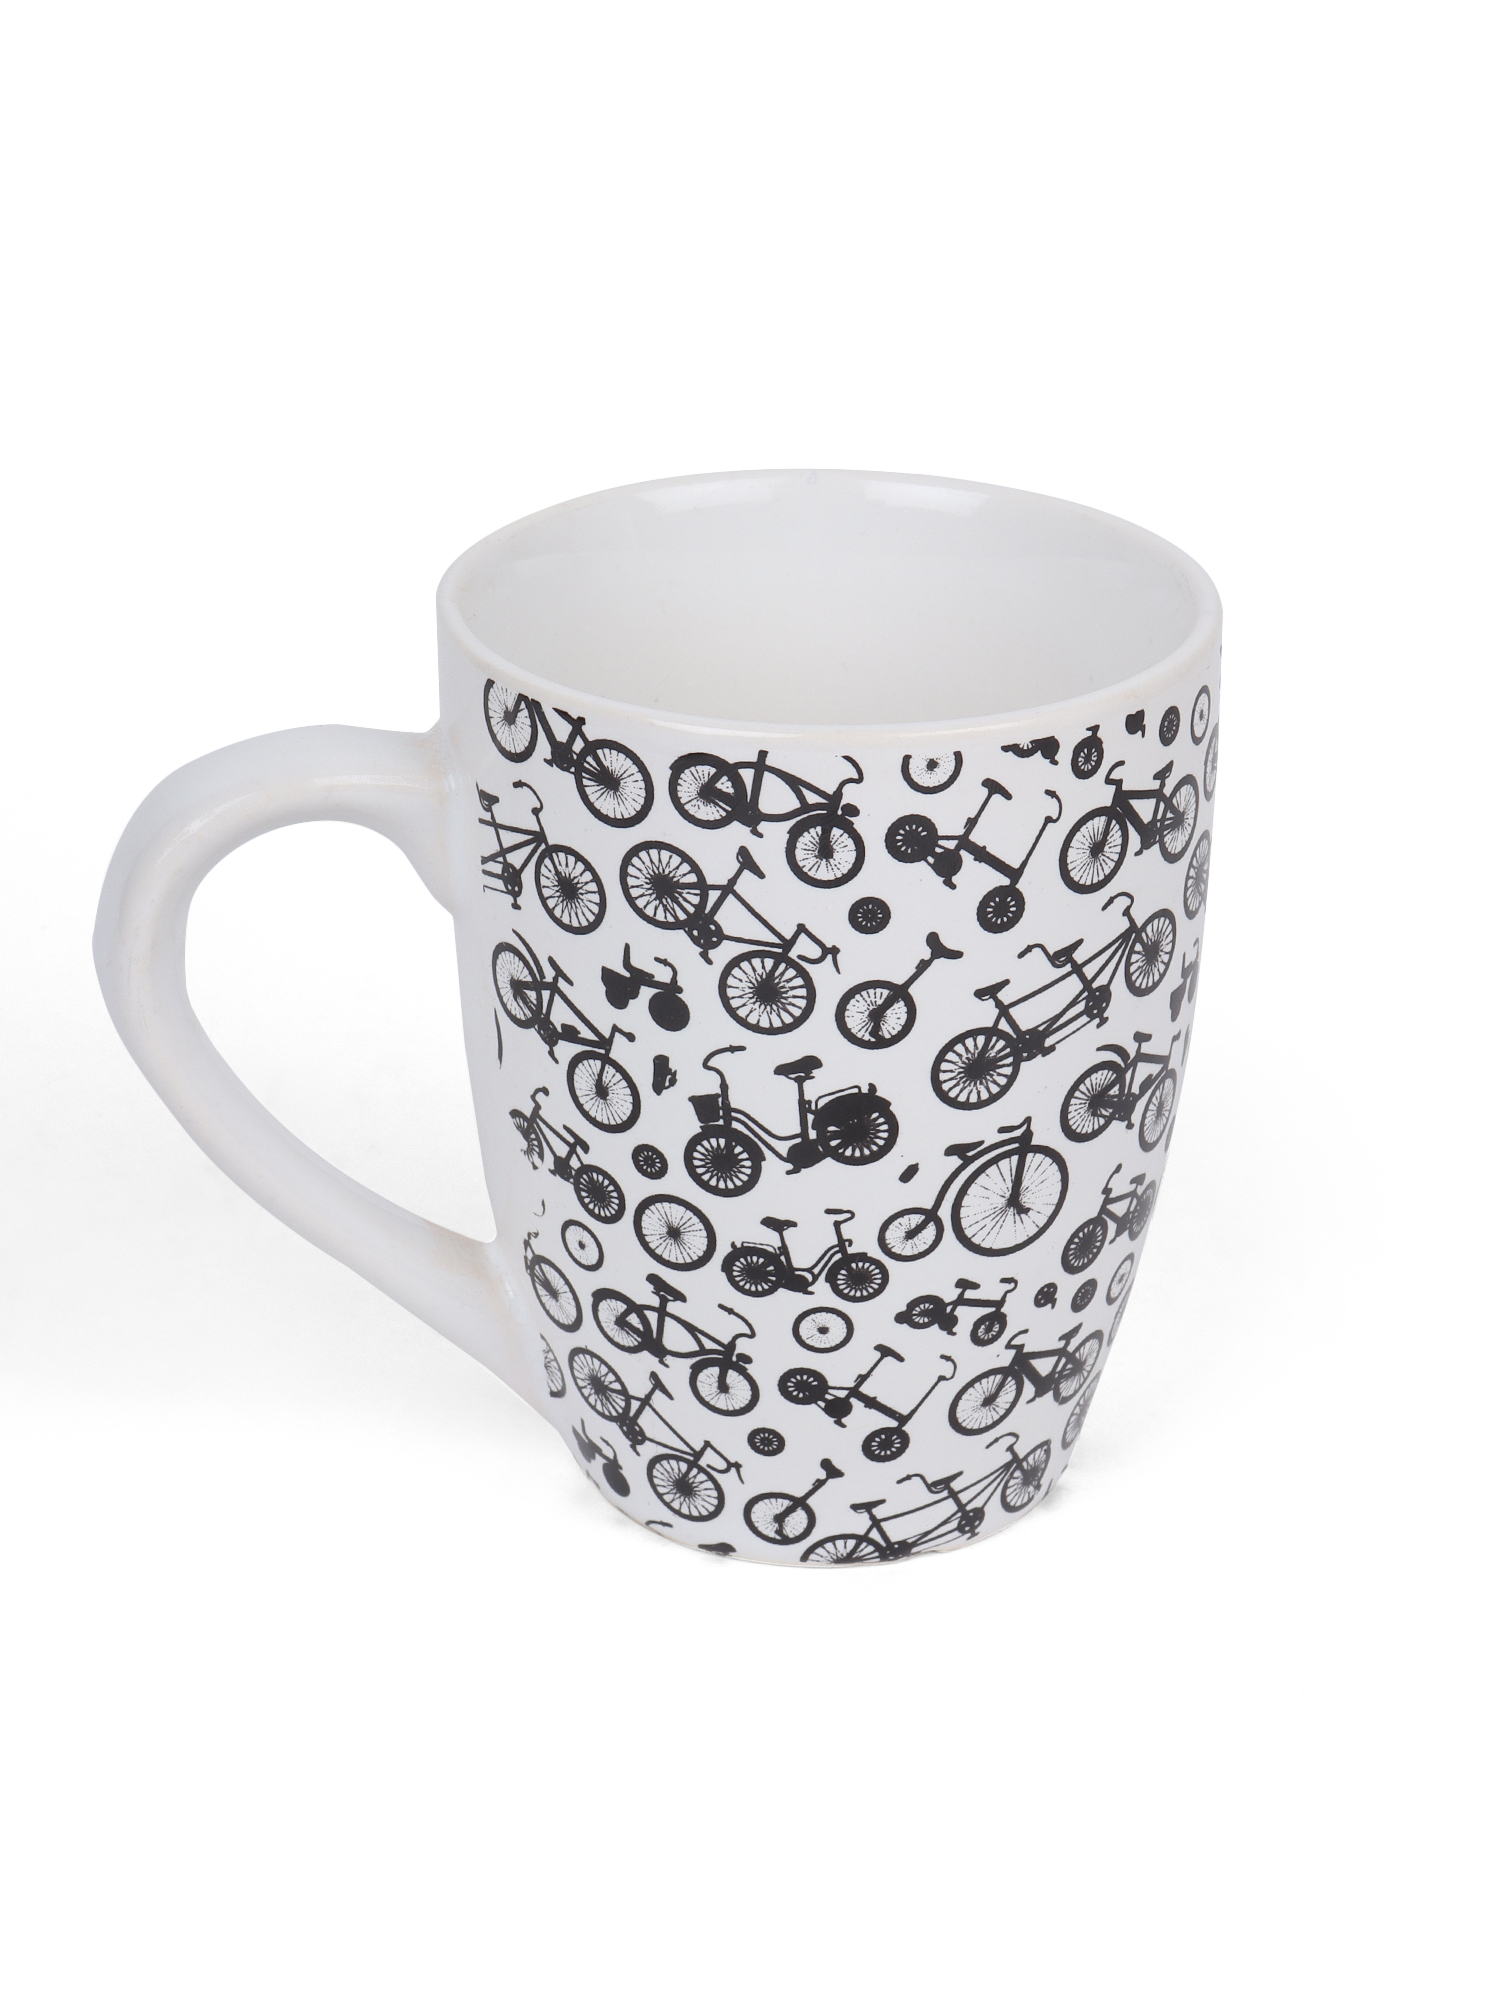 LOVE AOP Ceramic Coffee Mug, on Spoke Herd